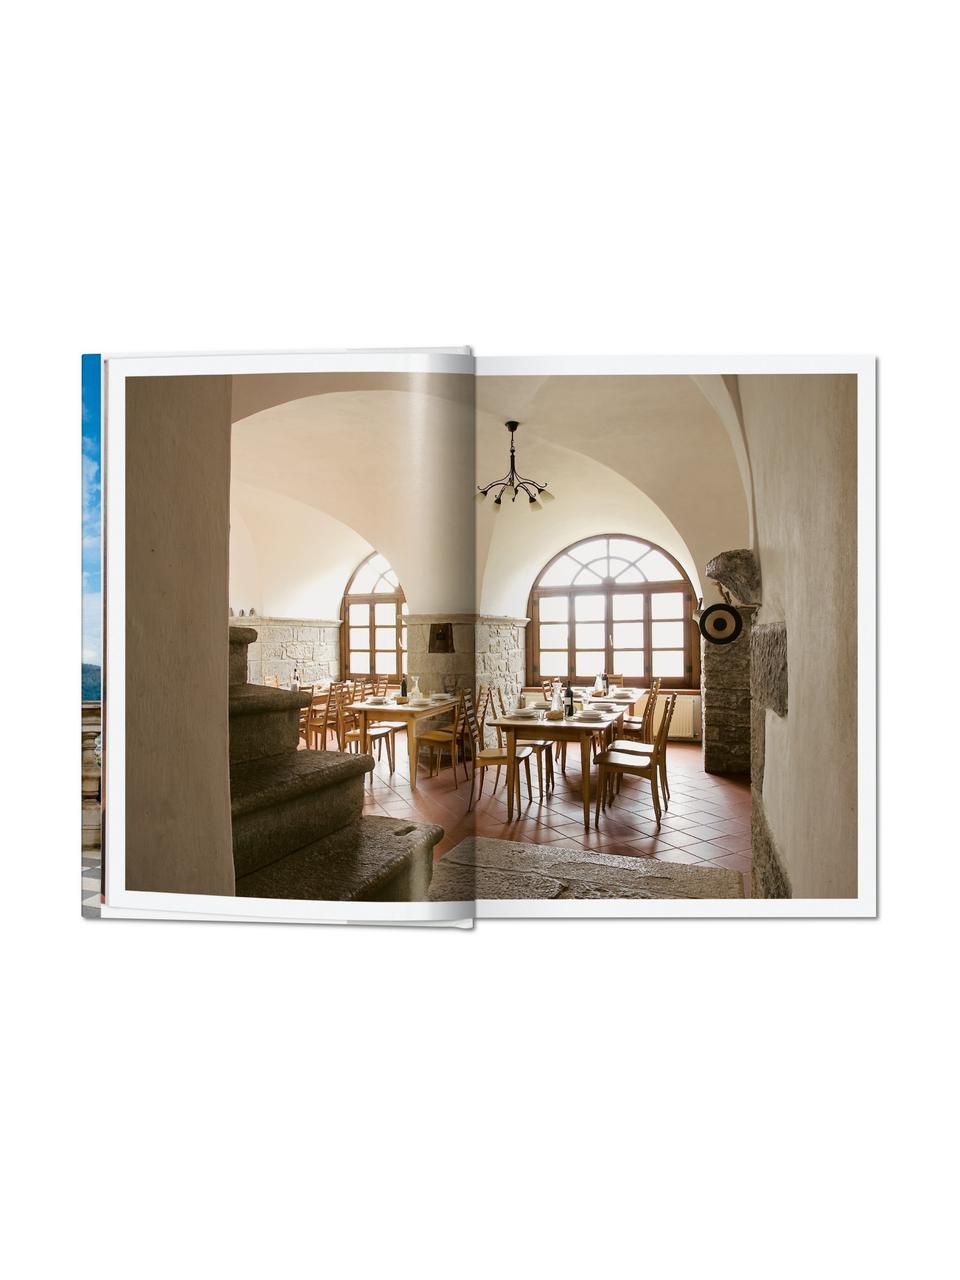 Livre photo Living in Tuscany, Papier, couverture rigide, Bleu, multicolore, larg. 14 x long. 20 cm